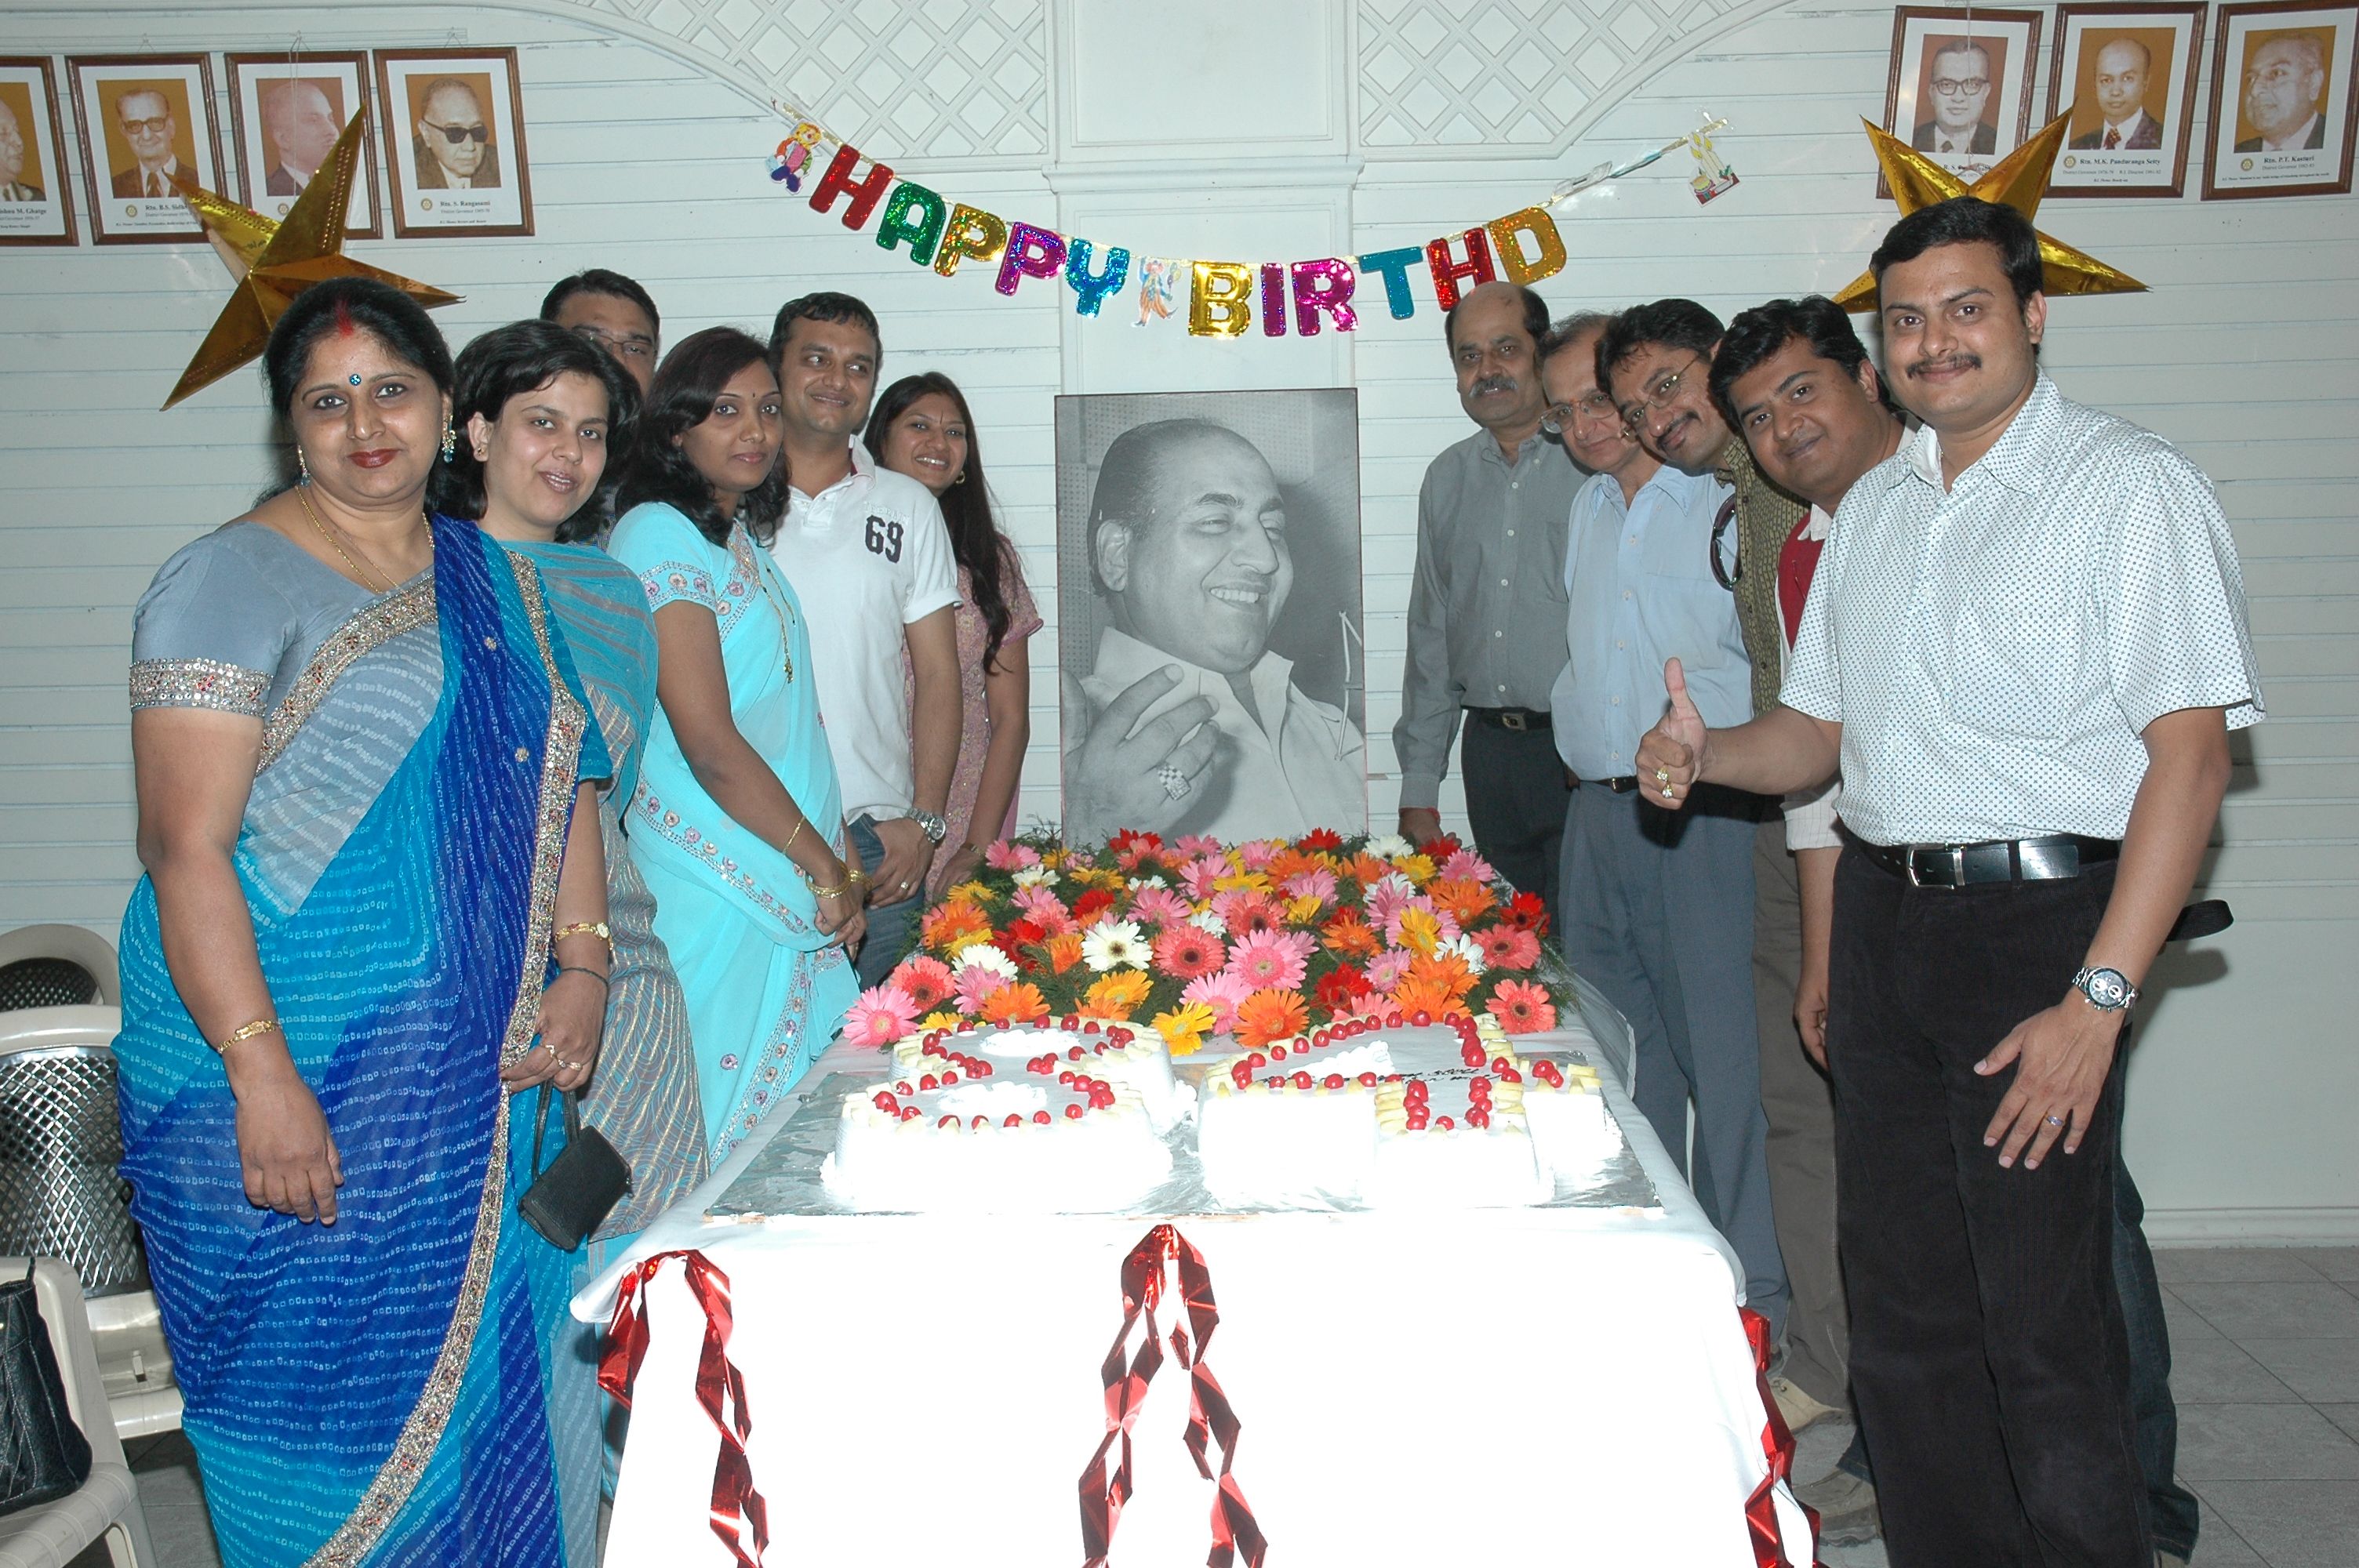 Mohd Rafi's Birthday Celebration by Baar Baar Rafi on Dec 24th 2008 in Bangalore